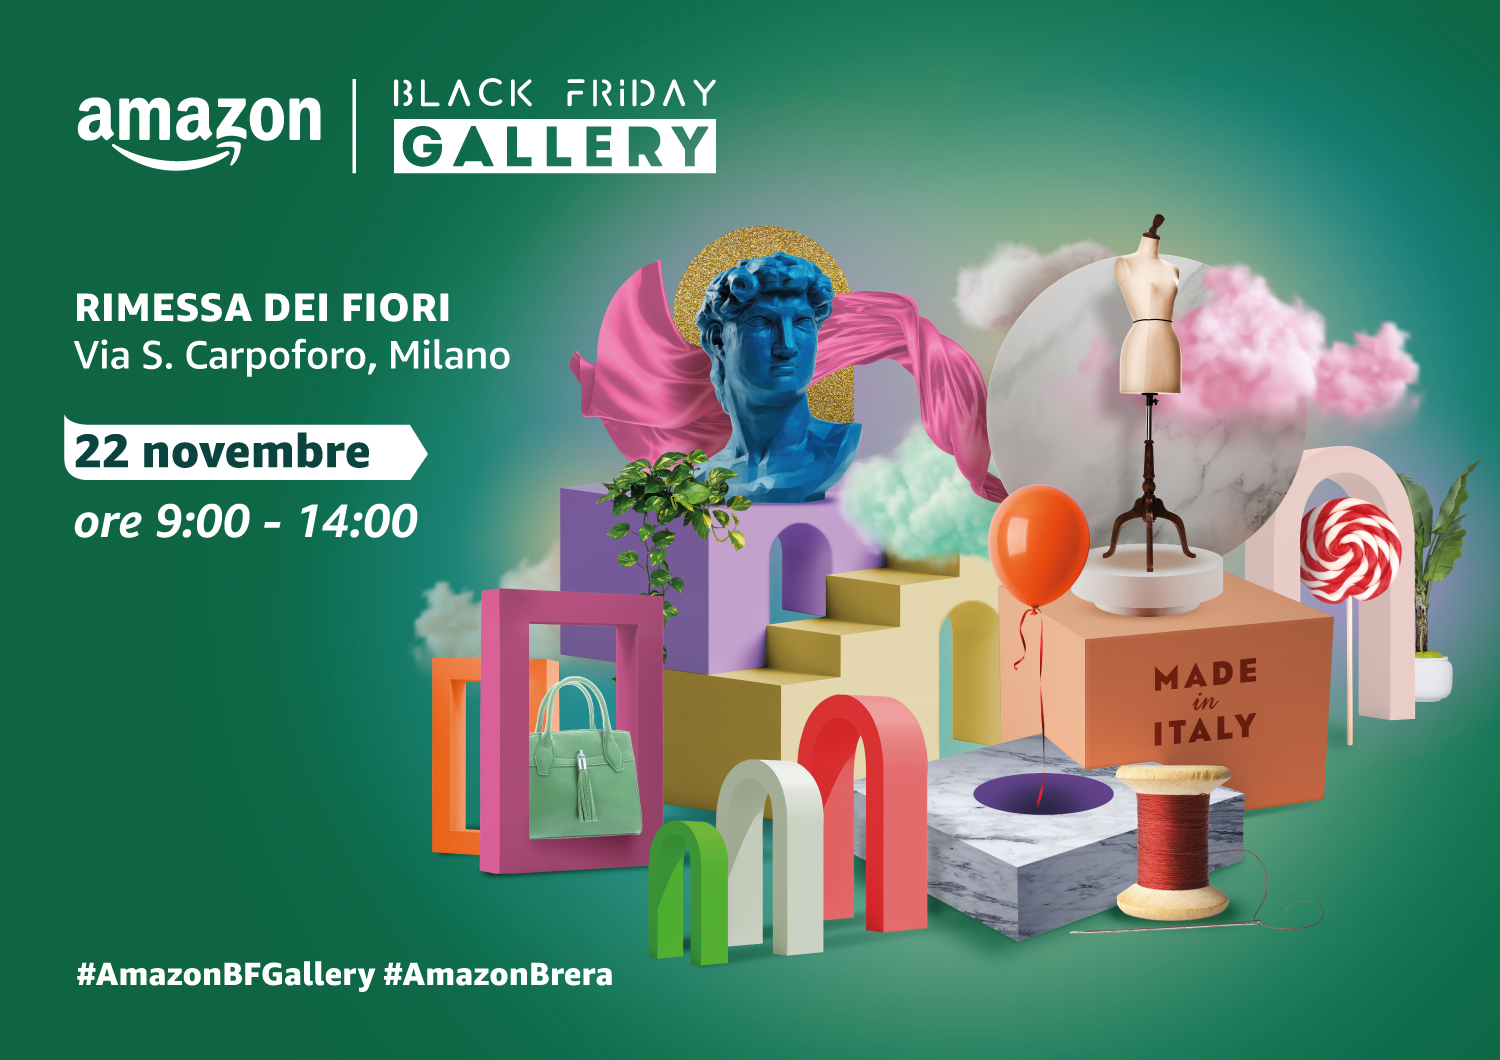 Amazon ti aspetta alla Black Friday Gallery di Milano